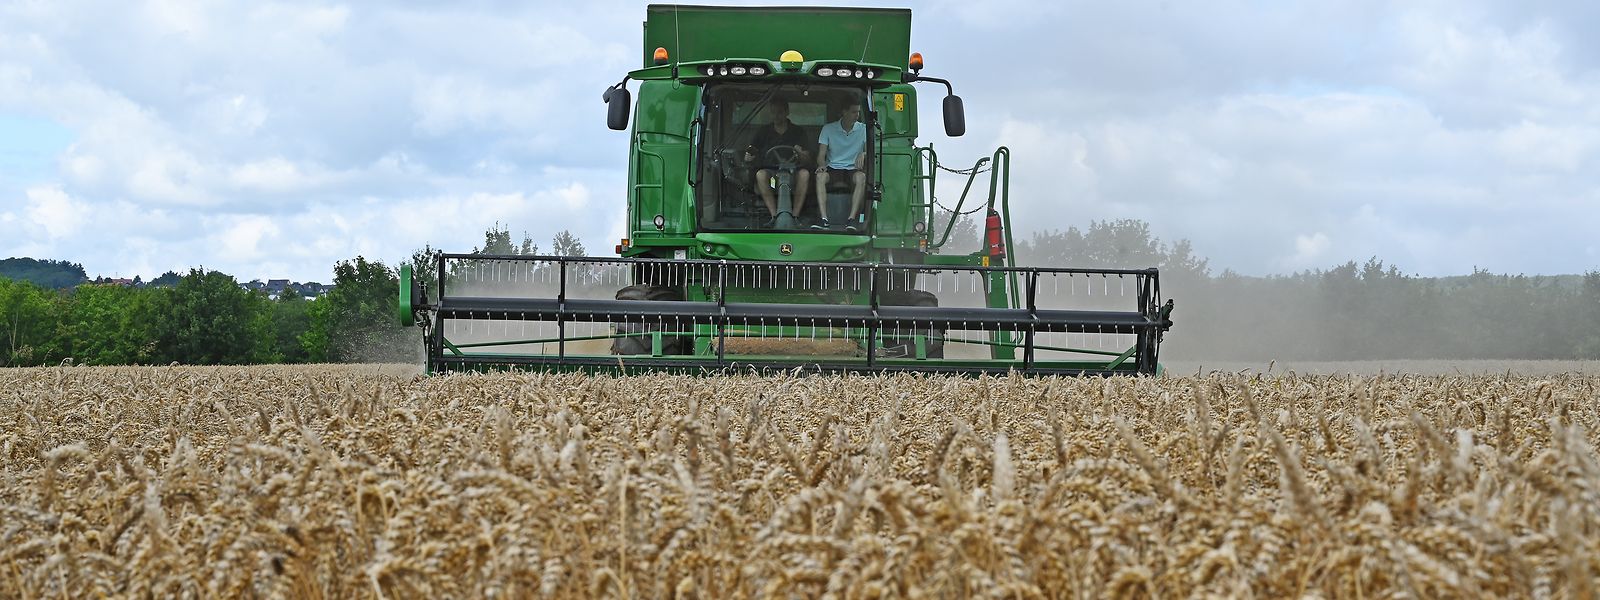 Die Lebensmittelpreise werden weiter steigen. Die hohen Energiekosten schlagen auf die Agrarproduktion durch und mit Russland und die Ukraine fallen zwei der wichtigsten Getreidelieferanten aus.